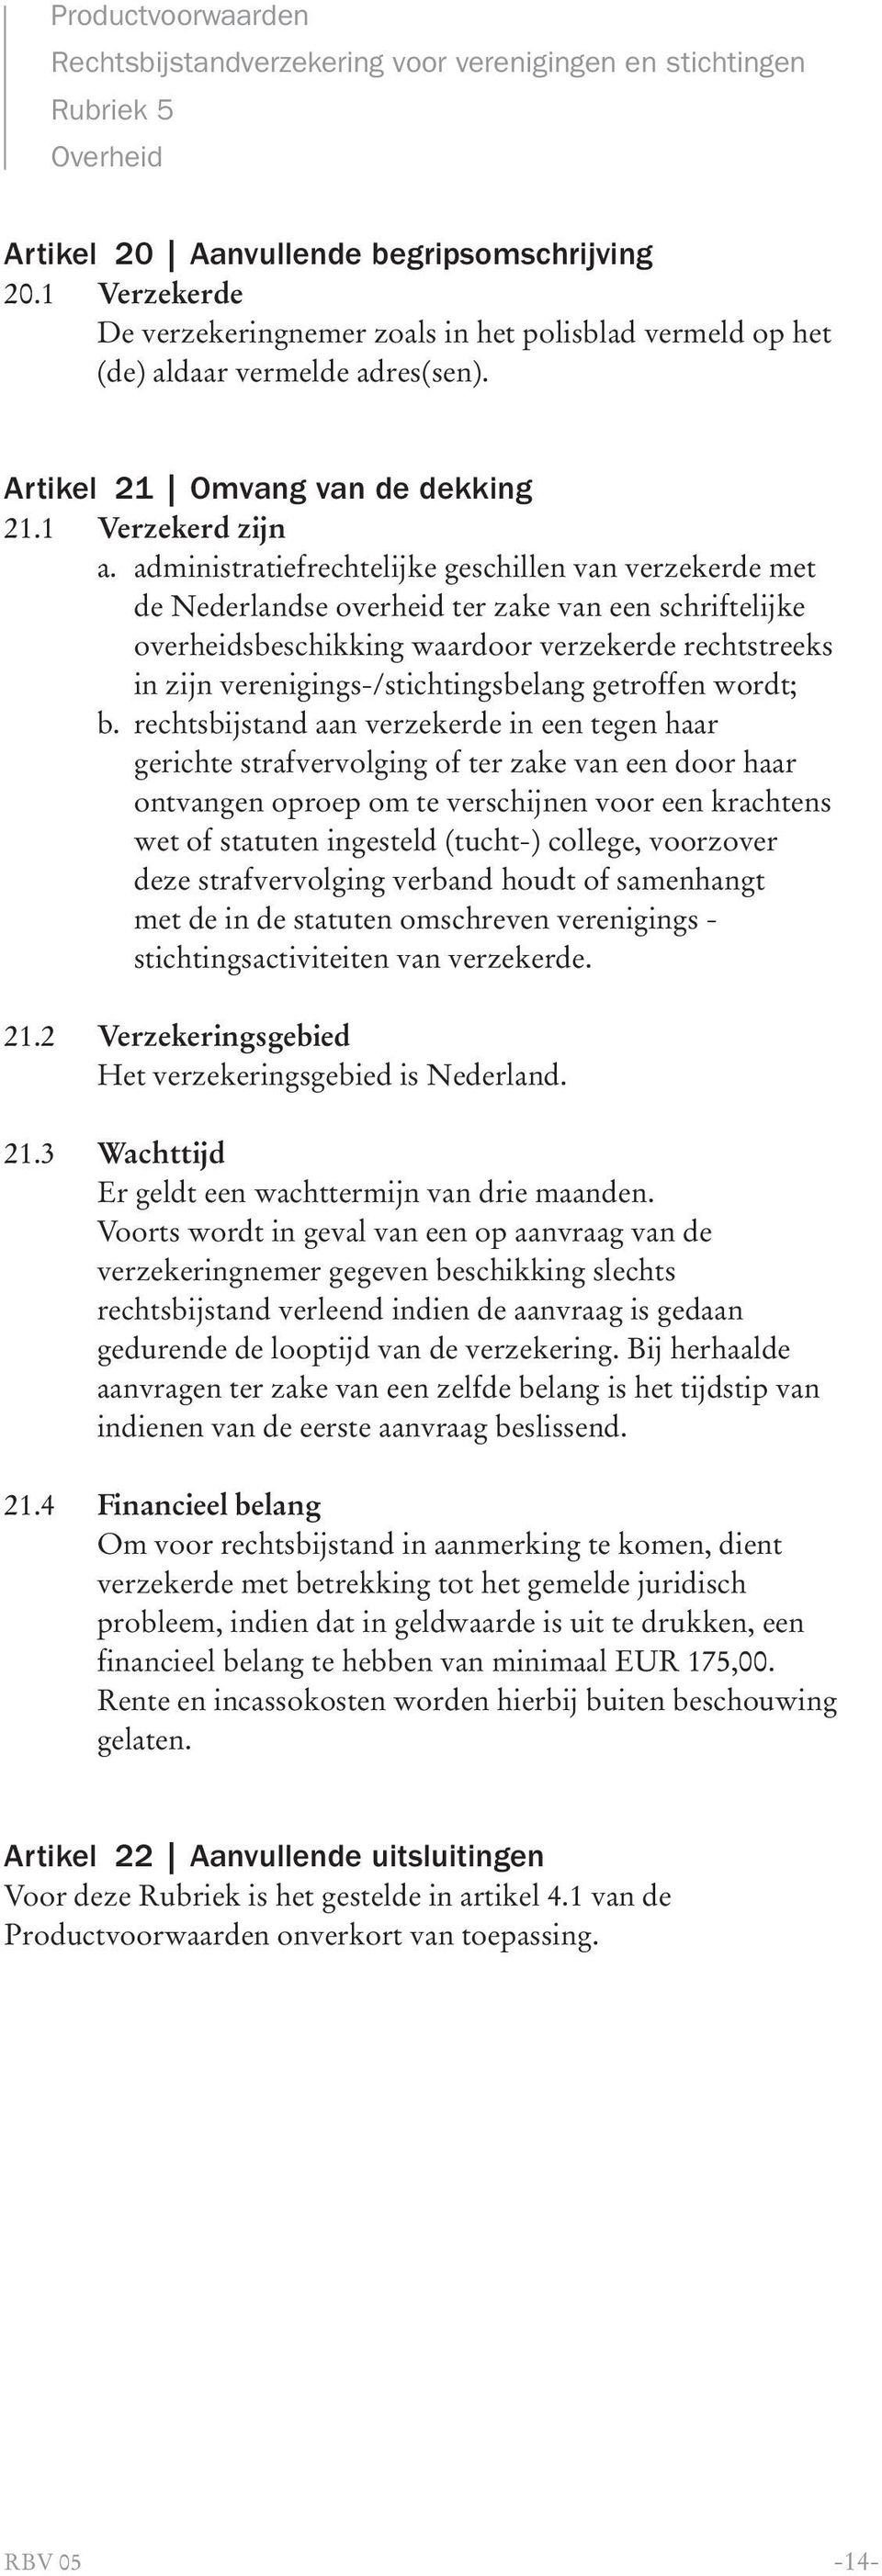 administratiefrechtelijke geschillen van verzekerde met de Nederlandse overheid ter zake van een schriftelijke overheidsbeschikking waardoor verzekerde rechtstreeks in zijn